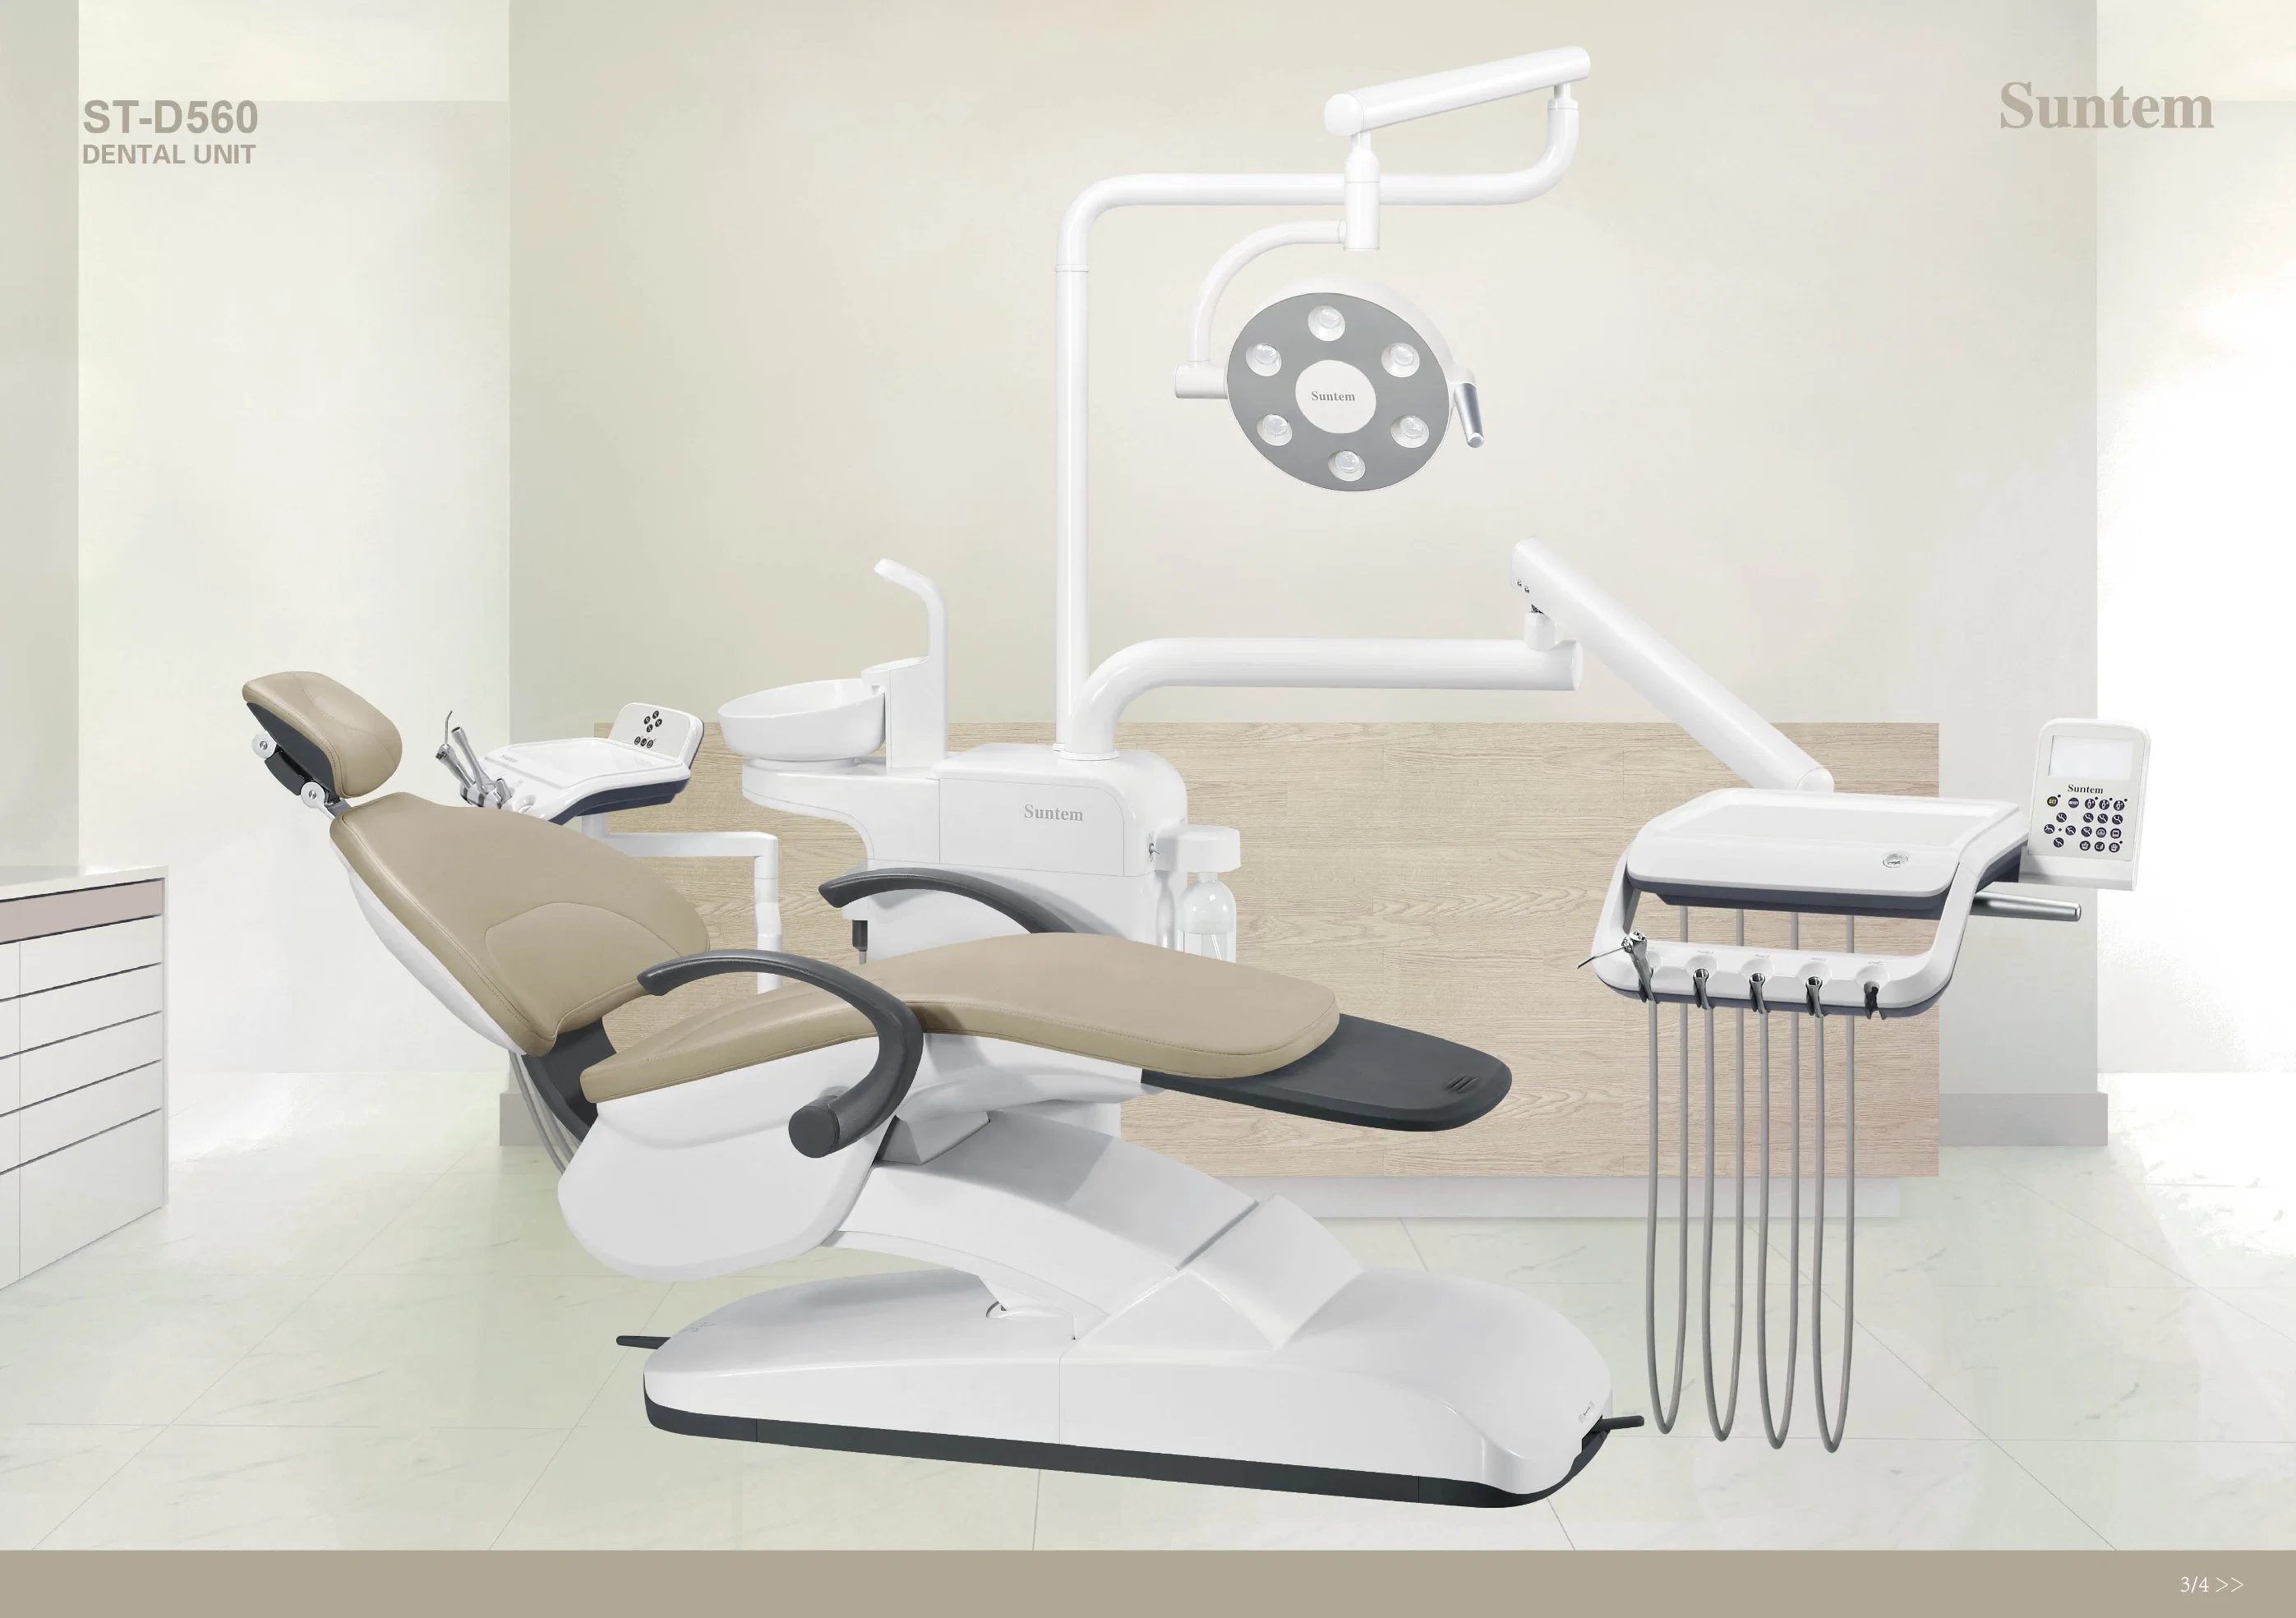 Unidade dentária Suntem St-D560 com Design Europeu/cadeira dentária/montagem baixa/Segurança/desinfecção/aprovação CE